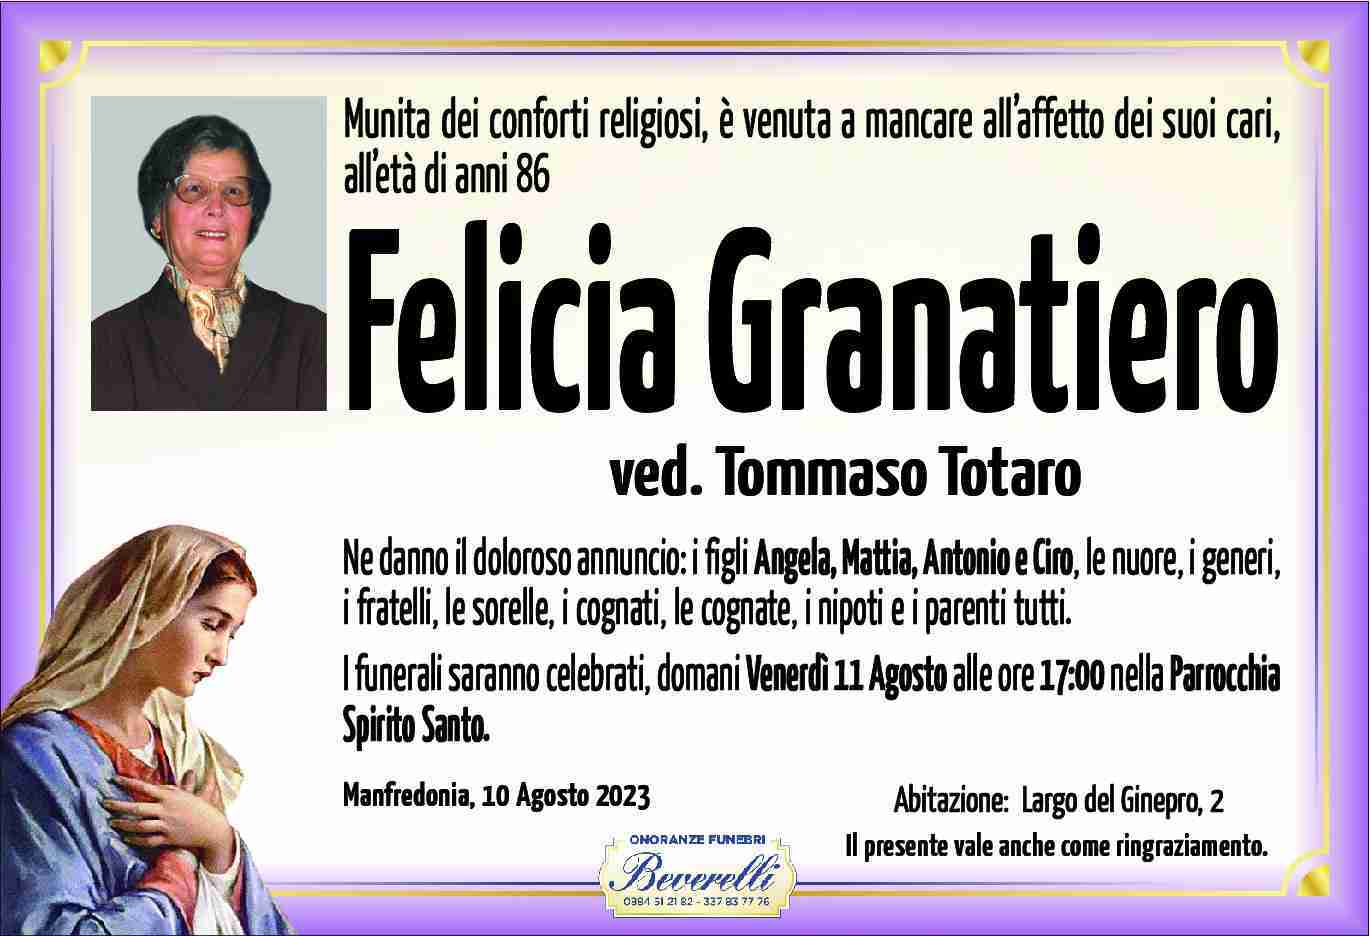 Felicia Granatiero